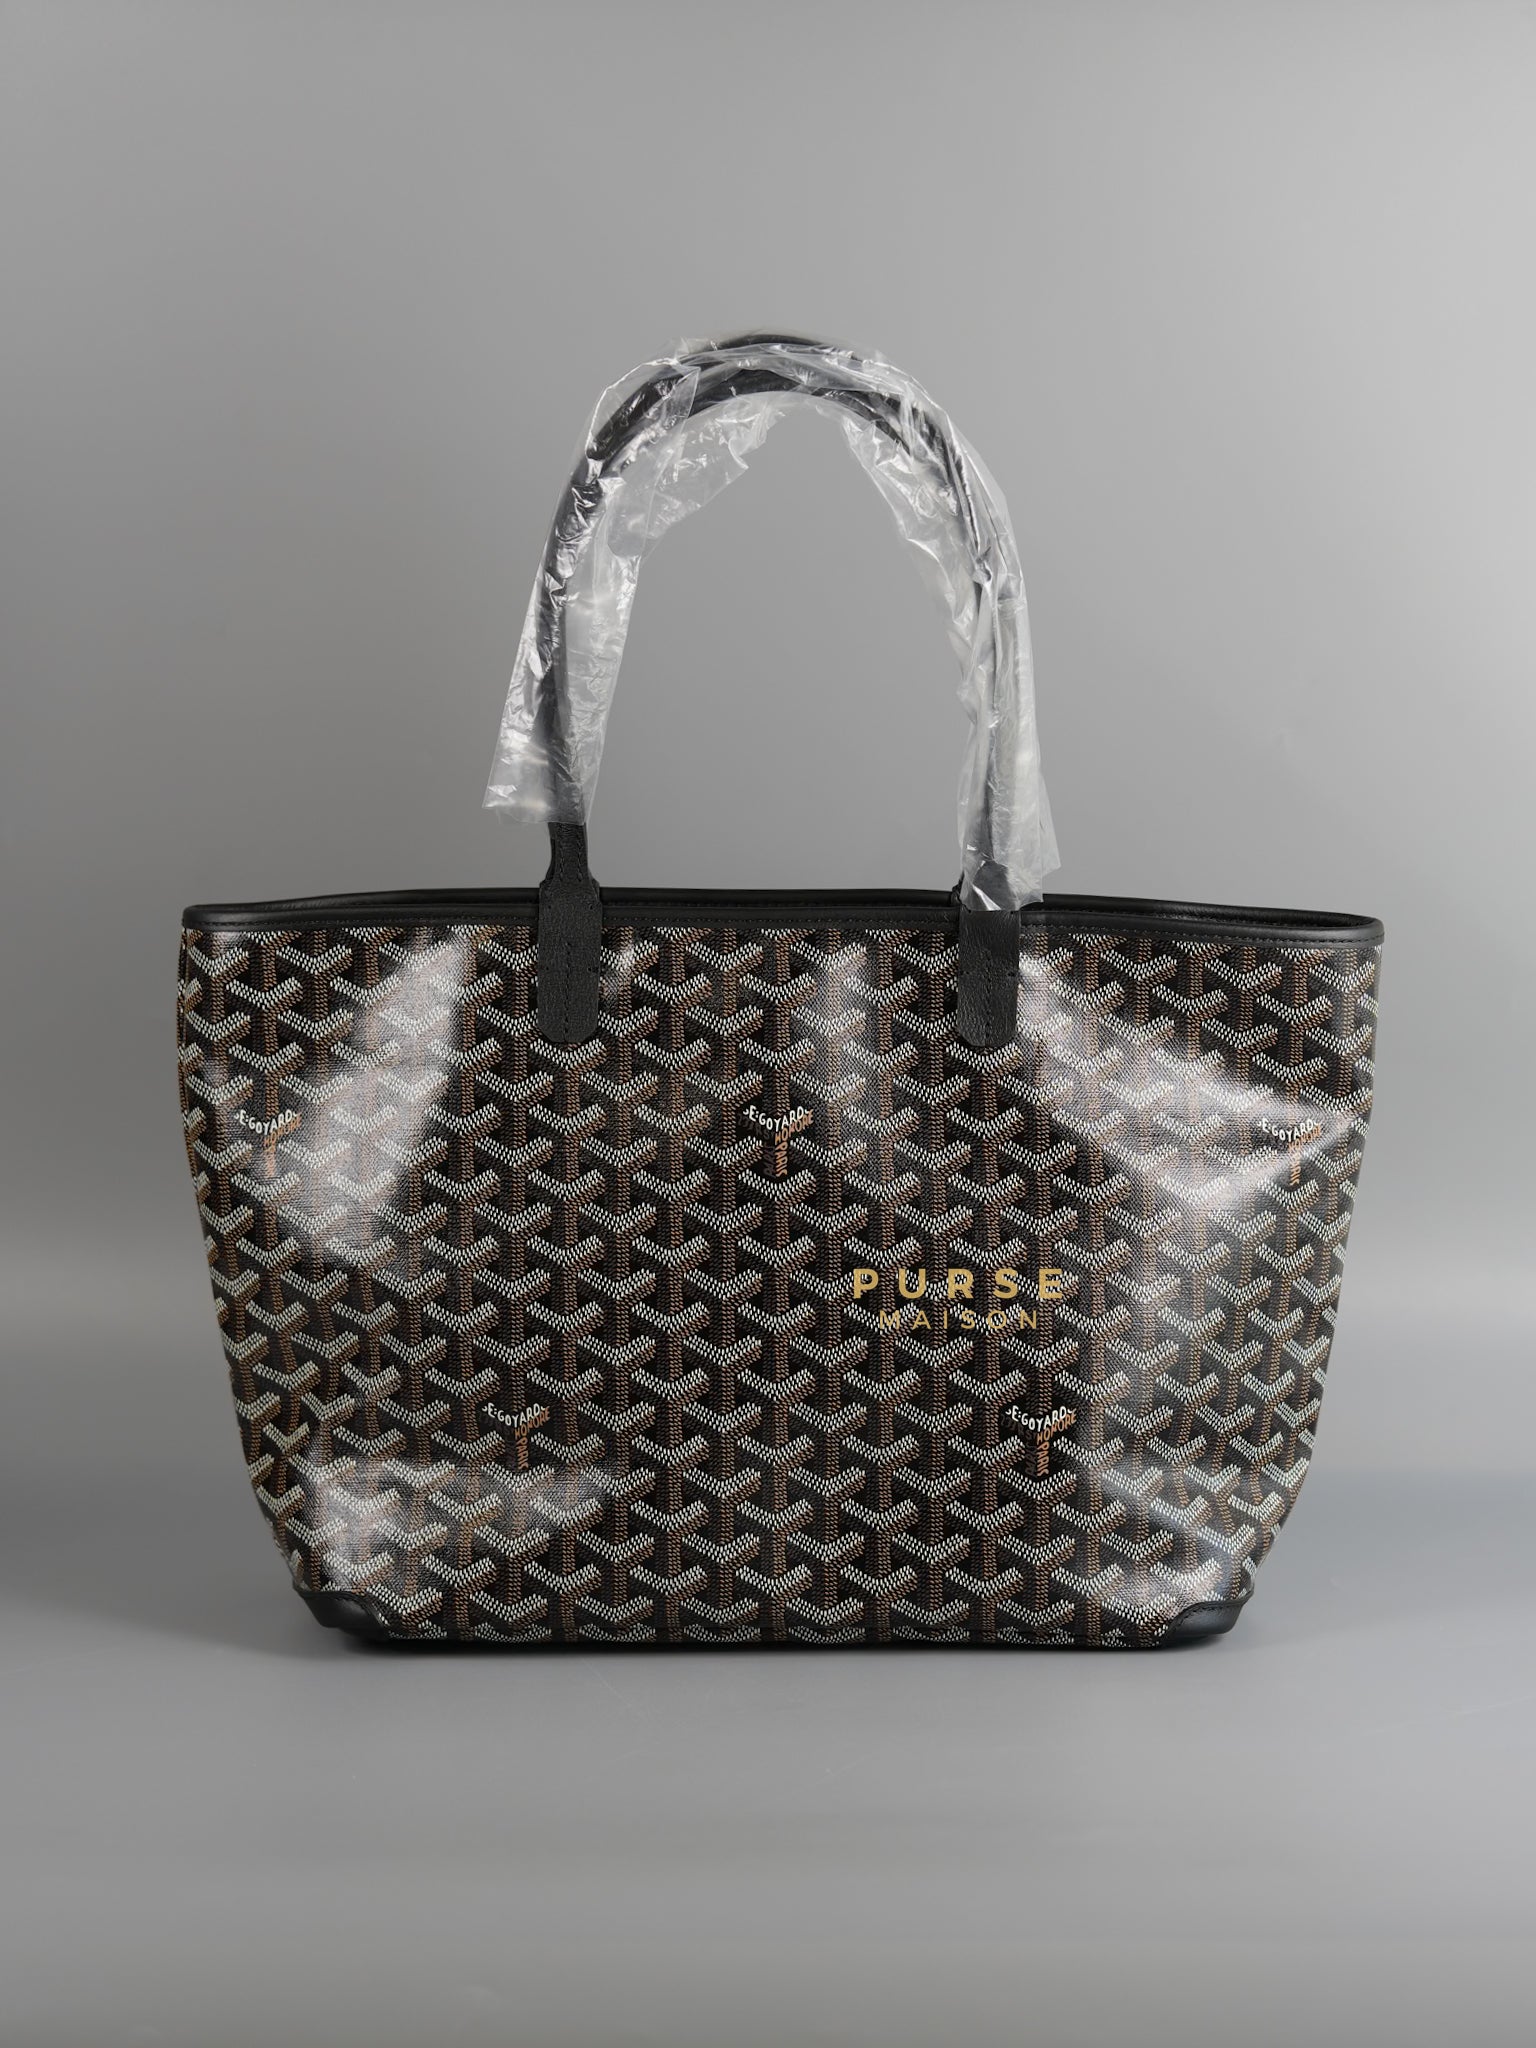 Artois PM Black (Noir) Tote Bag | Purse Maison Luxury Bags Shop